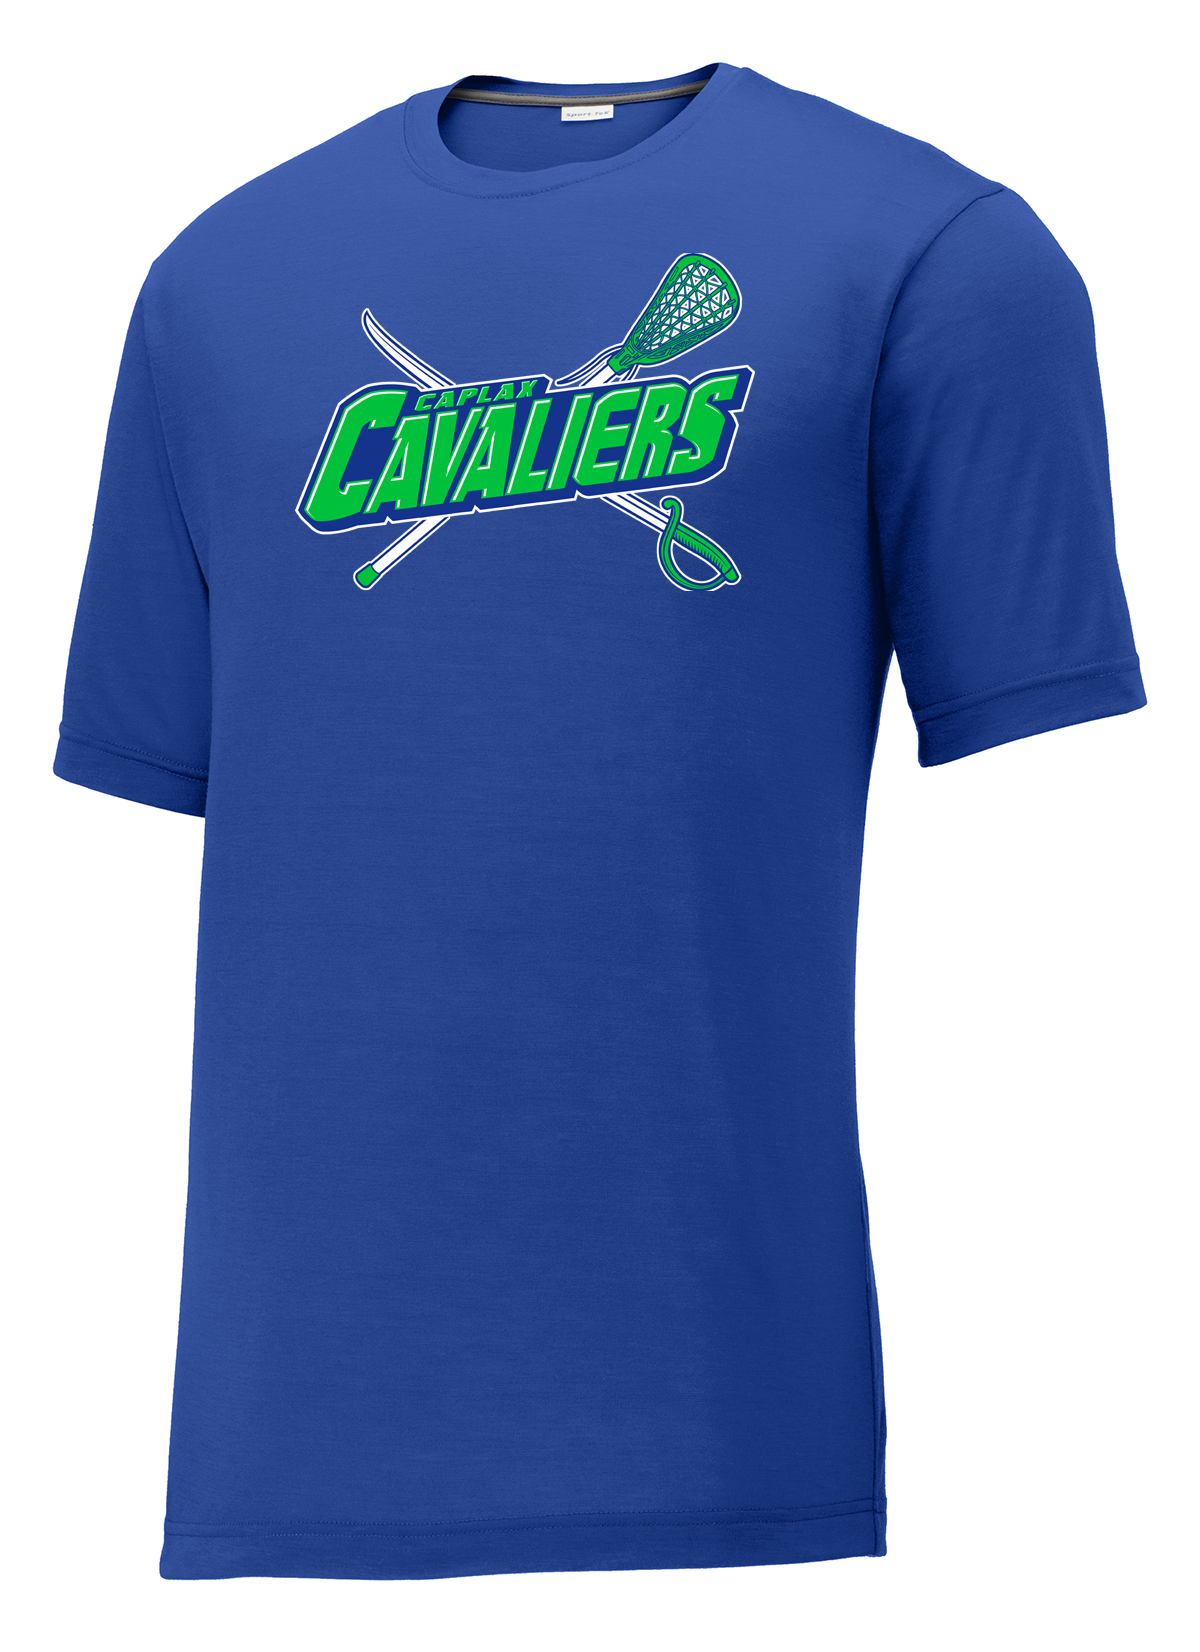 Cavaliers Lacrosse  CottonTouch Performance T-Shirt